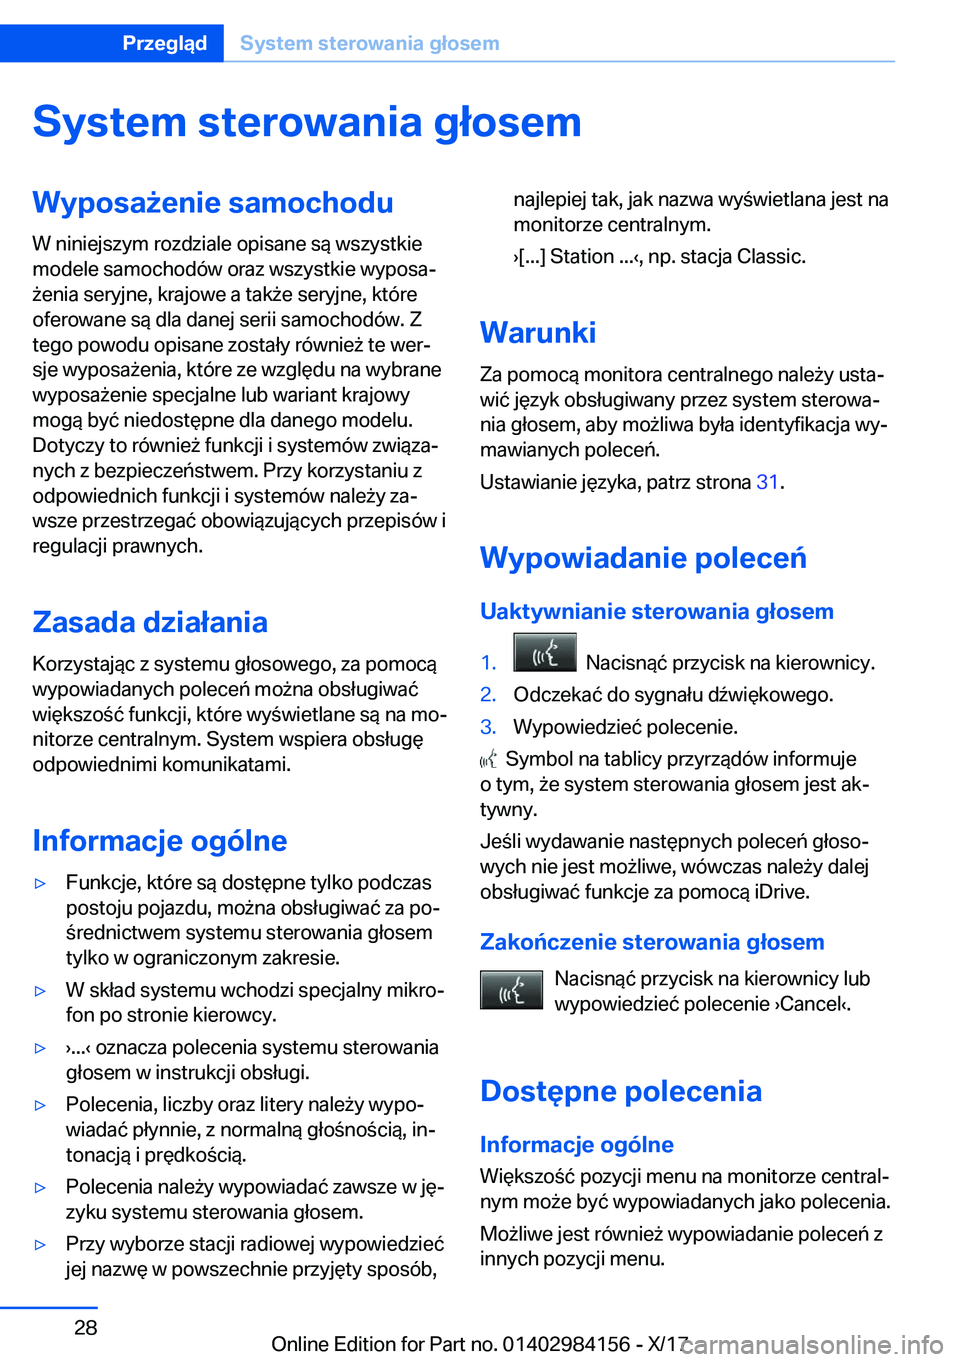 BMW 2 SERIES COUPE 2018  Instrukcja obsługi (in Polish) �S�y�s�t�e�m��s�t�e�r�o�w�a�n�i�a��g�ł�o�s�e�m�W�y�p�o�s�a9�e�n�i�e��s�a�m�o�c�h�o�d�u
�W� �n�i�n�i�e�j�s�z�y�m� �r�o�z�d�z�i�a�l�e� �o�p�i�s�a�n�e� �s�